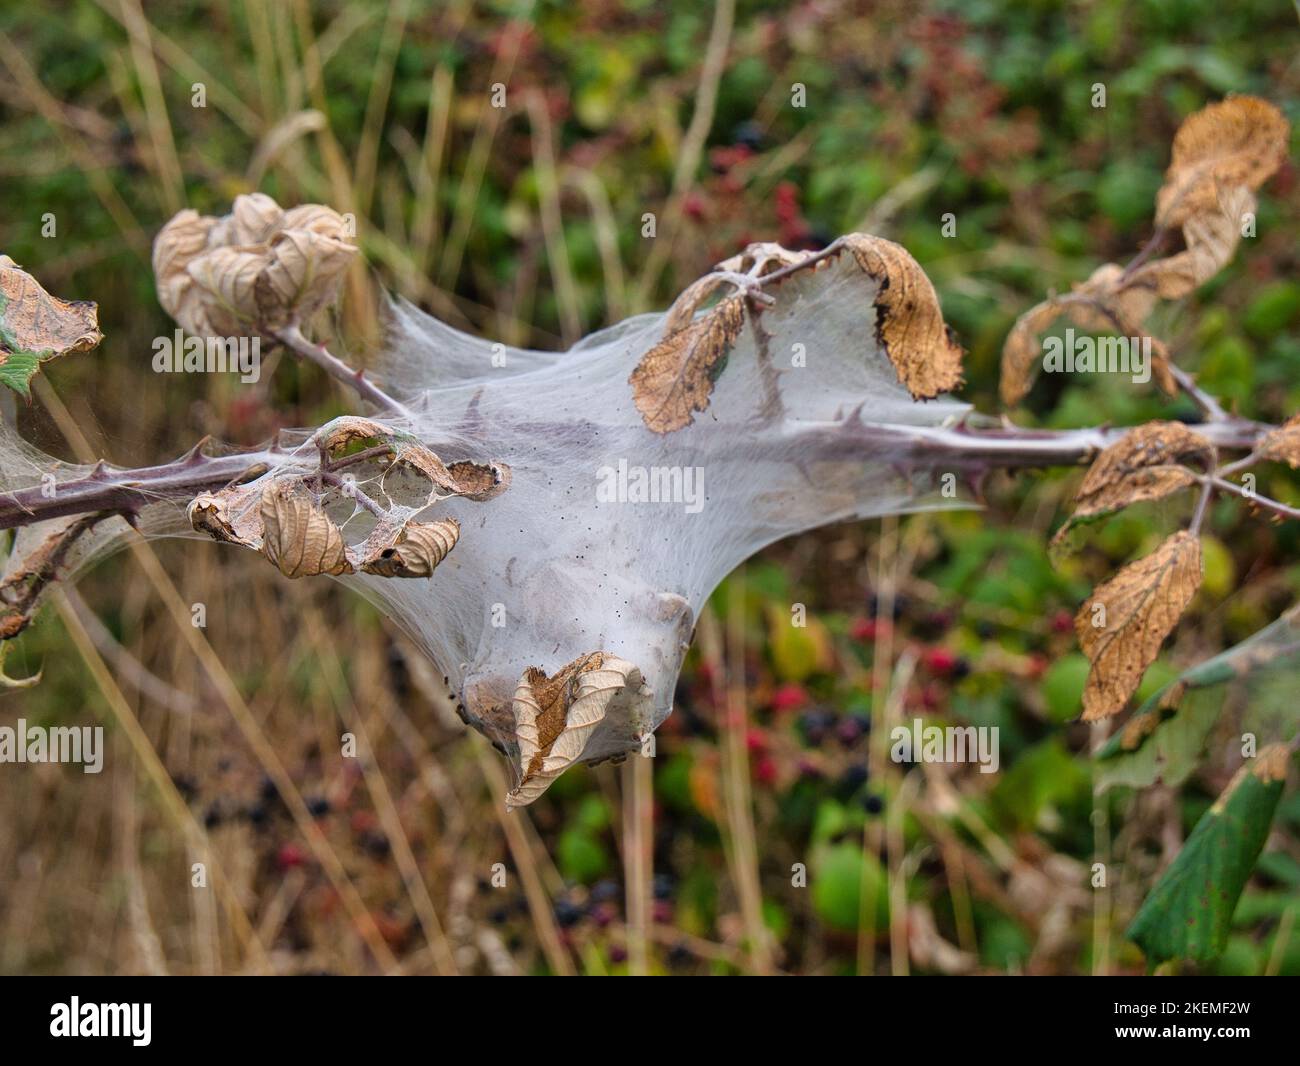 Un nastro caterpillar costruito su un fusto di pianta con foglie essiccate hedgerow a Suffolk, Inghilterra, Regno Unito. Foto Stock